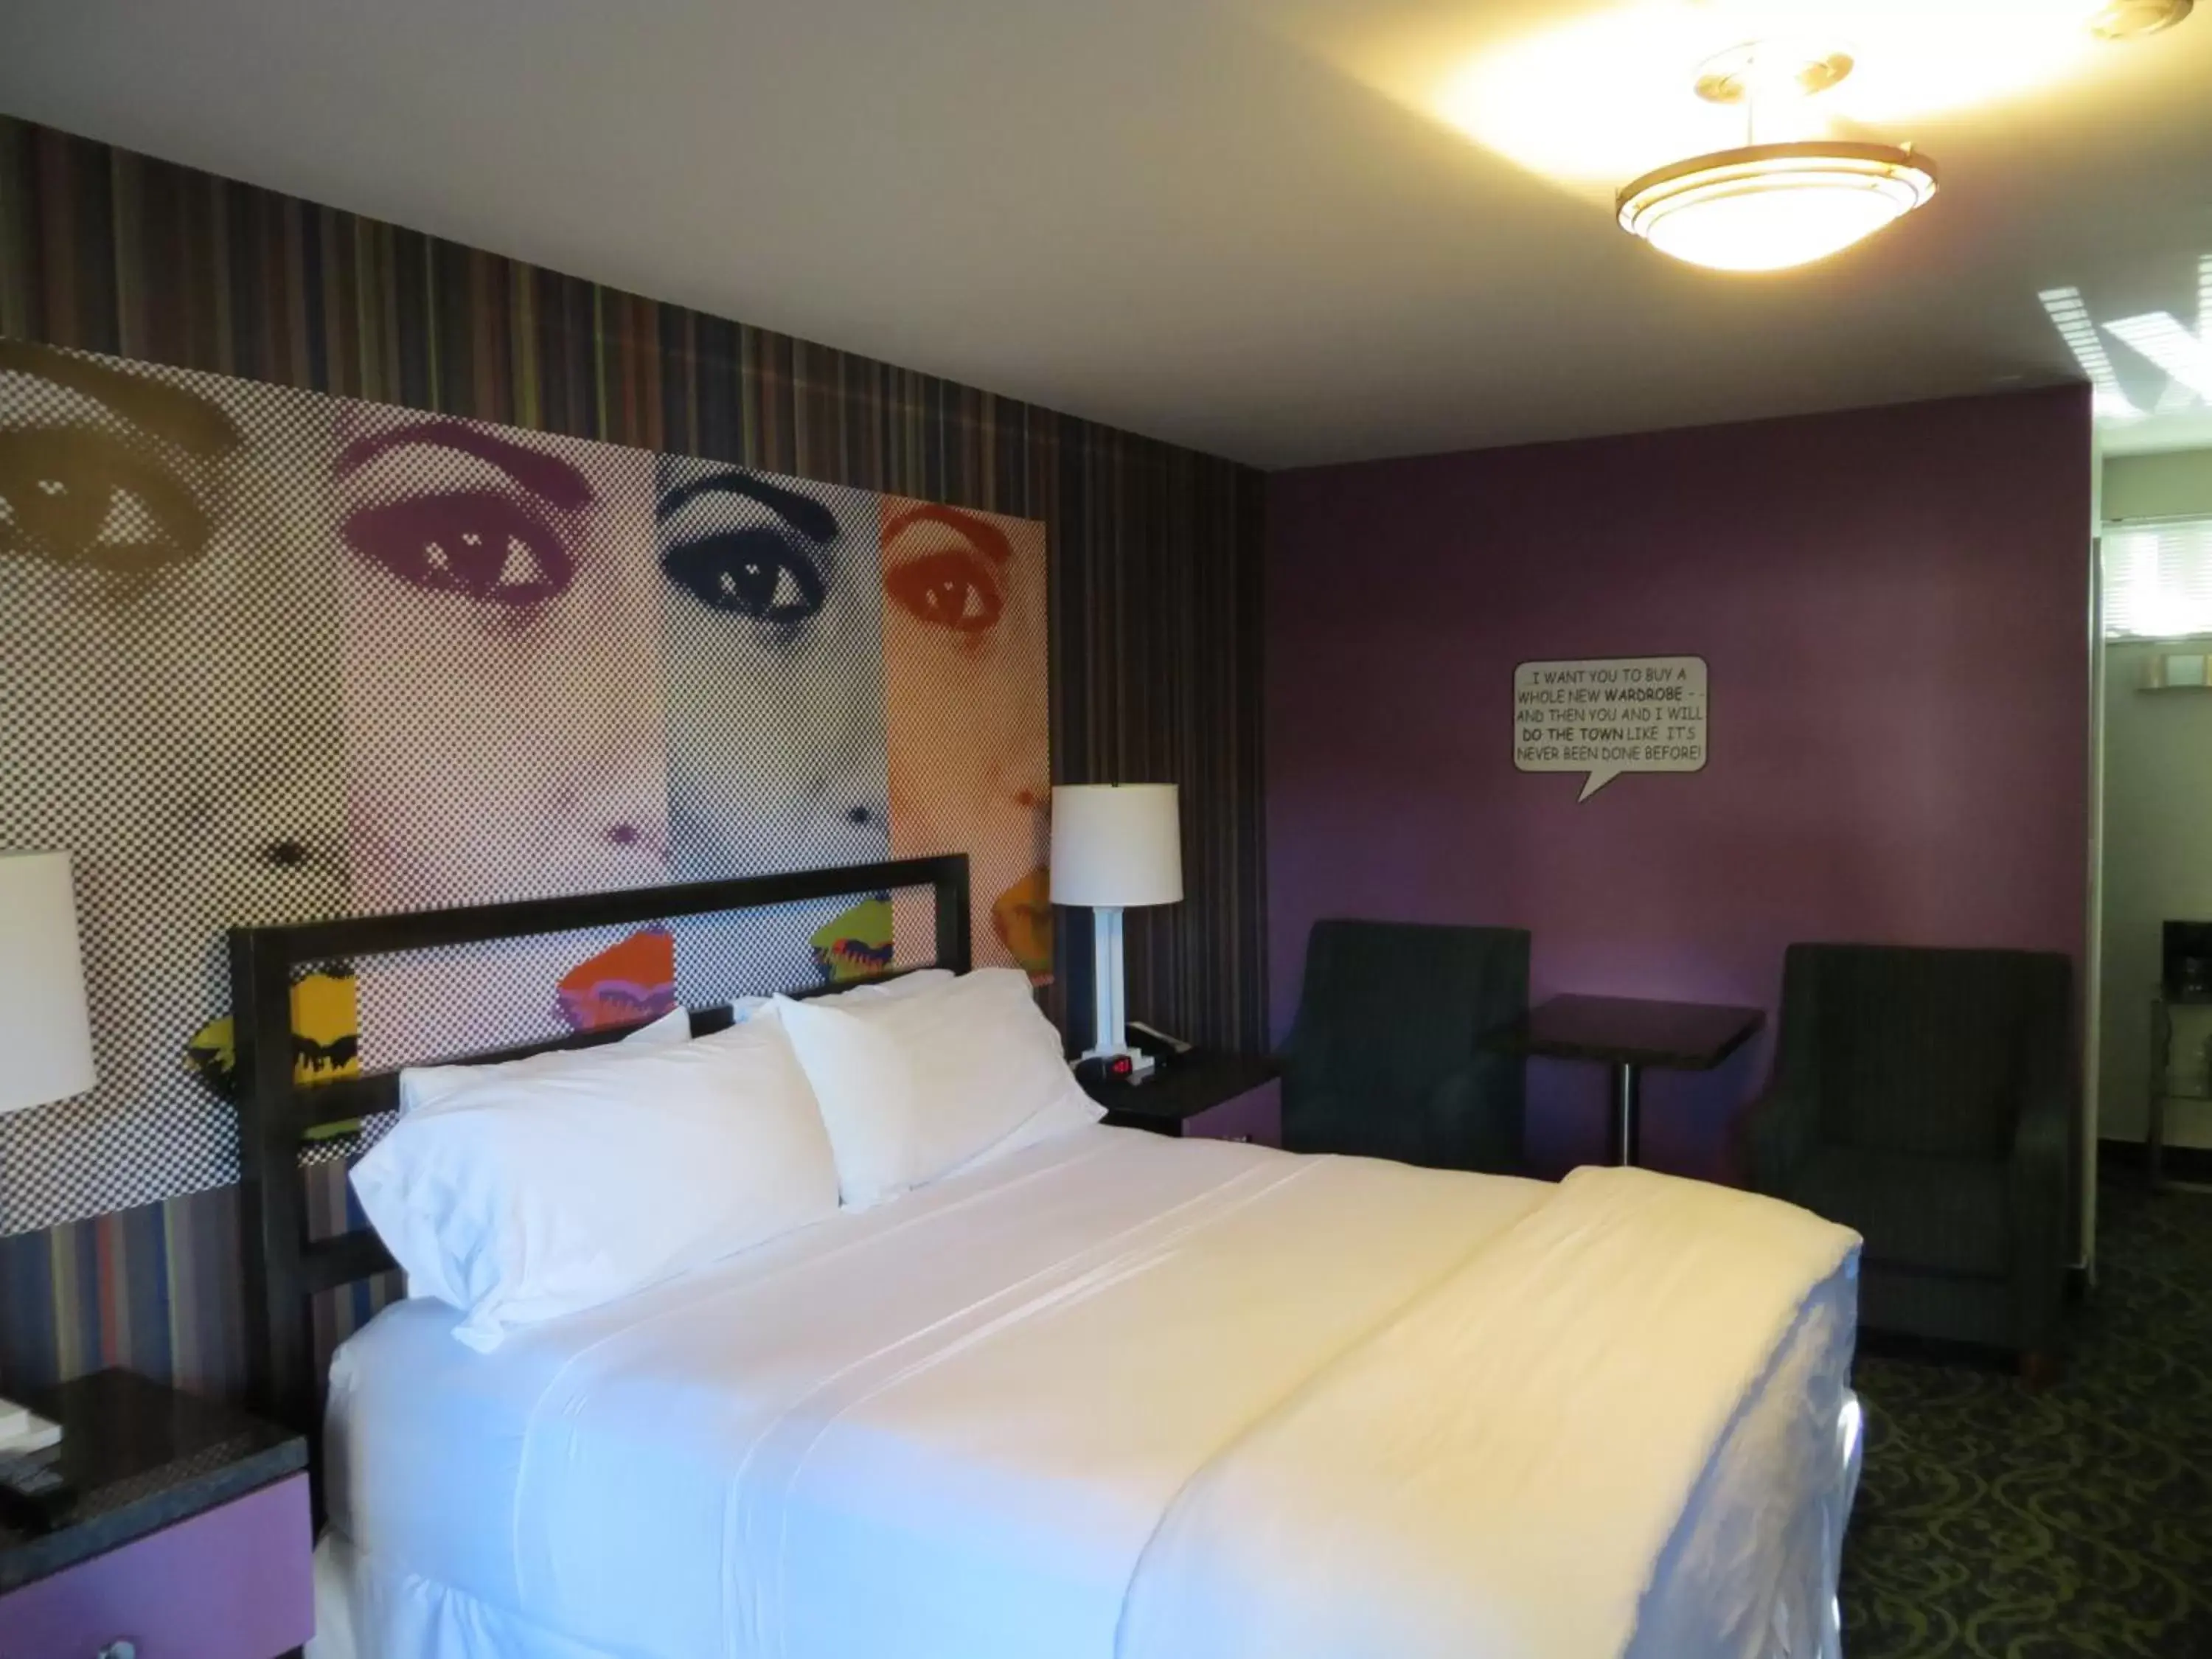 Bed in 7 Springs Inn & Suites